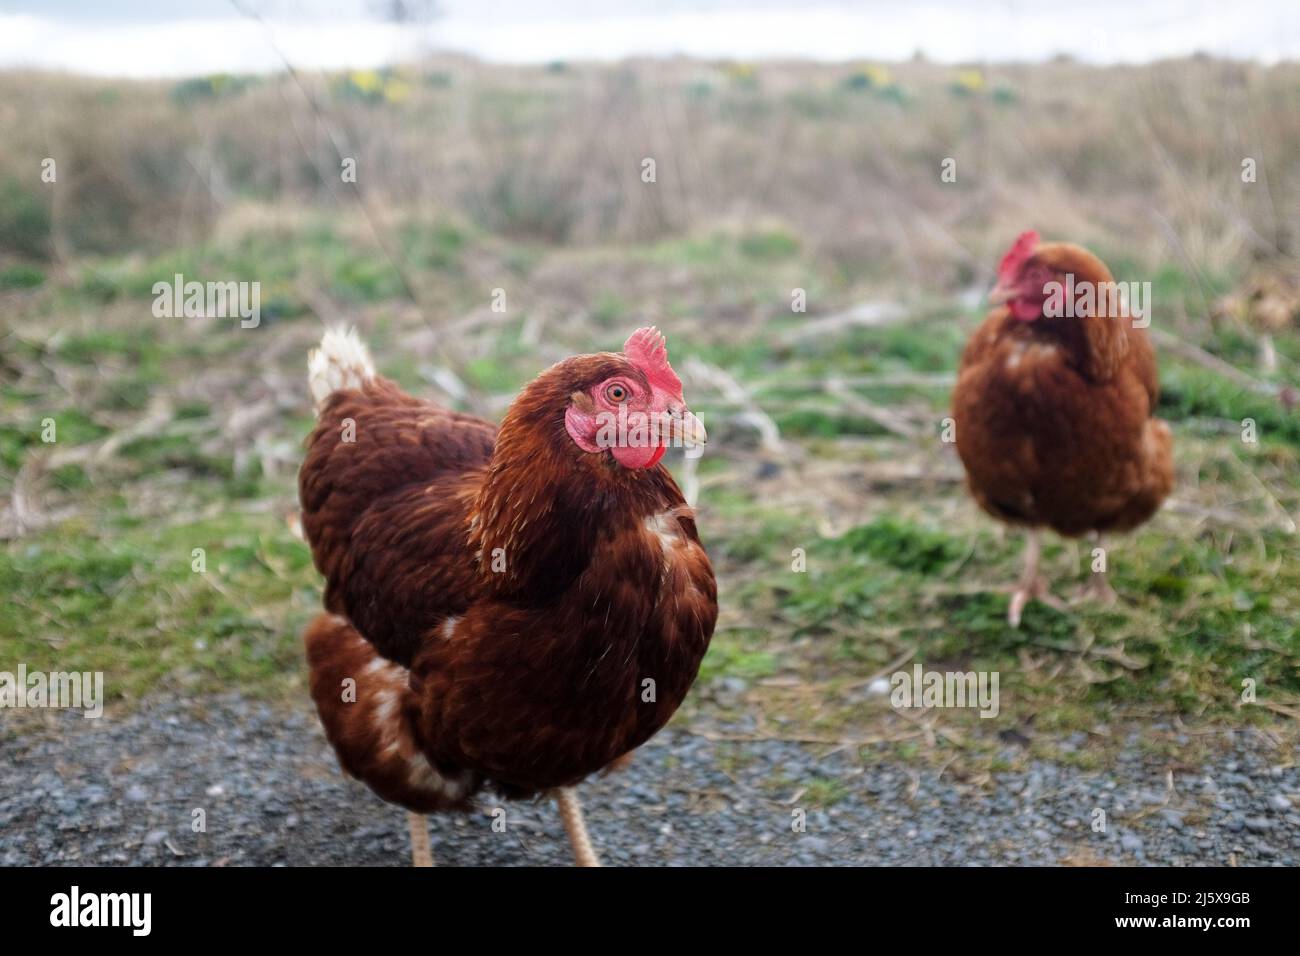 2 gallinas de color rojo en una zona rural Foto de stock